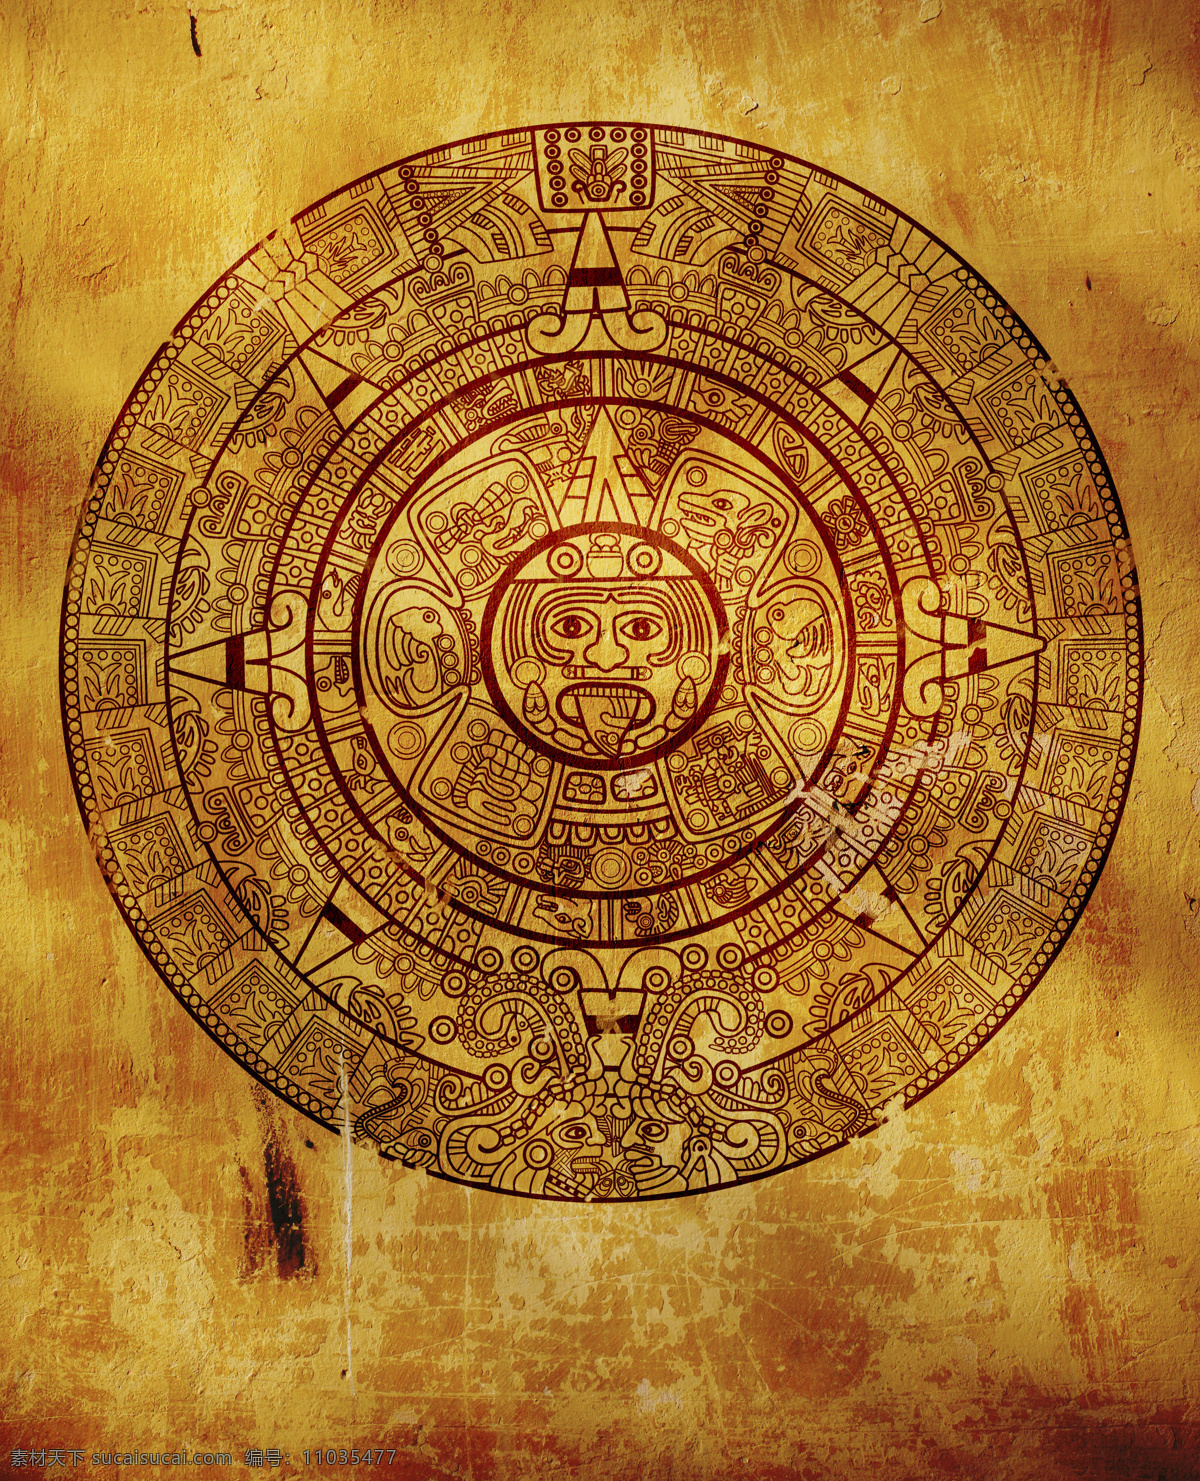 玛雅 预言 图腾 玛雅图腾 玛雅预言 世界末日预言 玛雅文化 玛雅文明 其他类别 生活百科